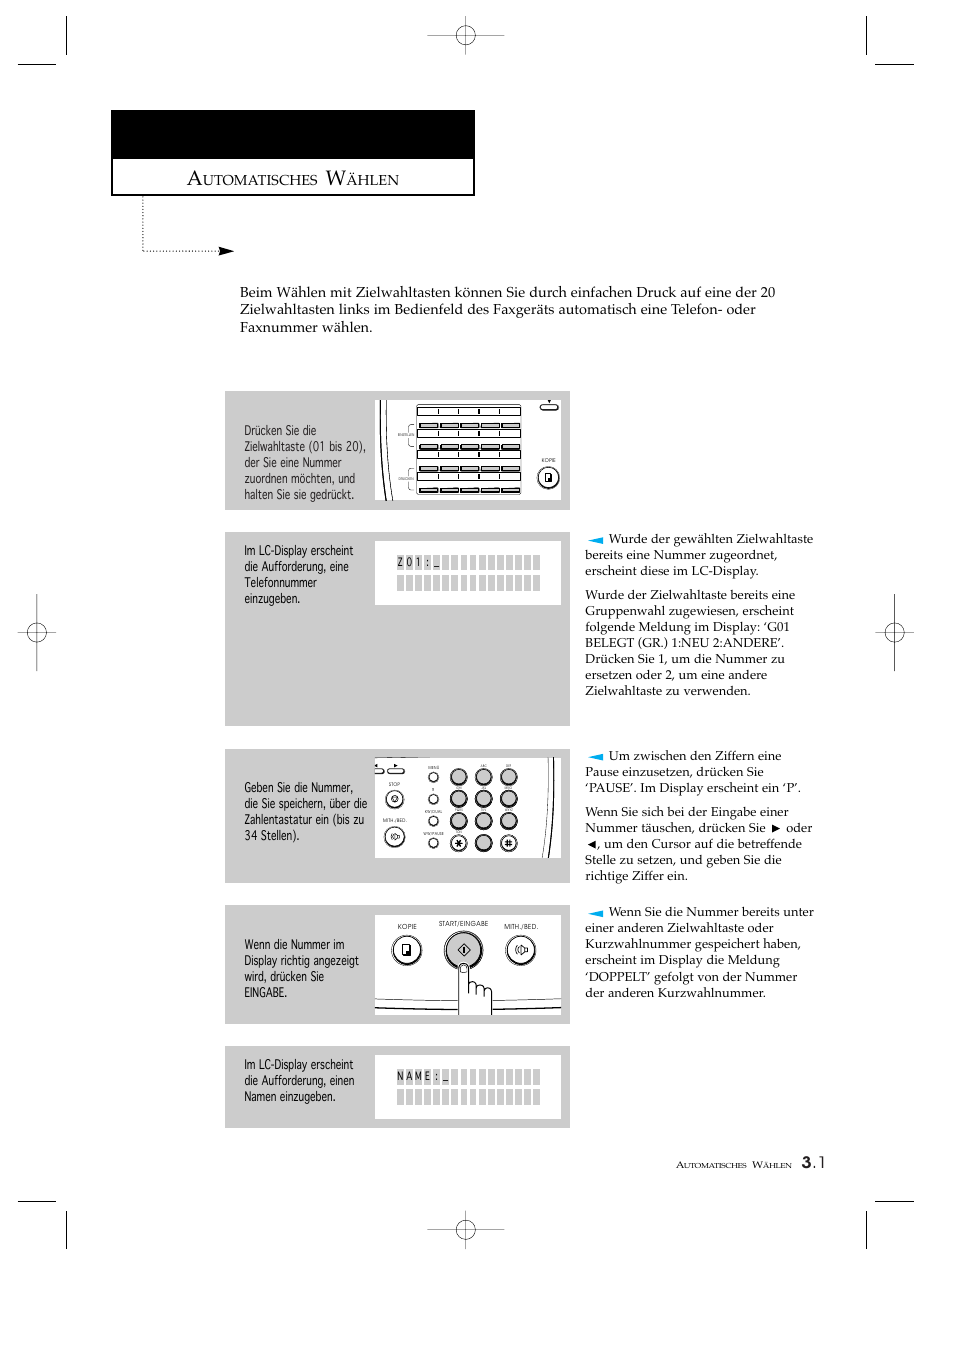 Wählen mit zielwahltasten, Nummern für zielwahl speichern, Utomatisches | Hlen | Samsung SF4200 Benutzerhandbuch | Seite 50 / 133